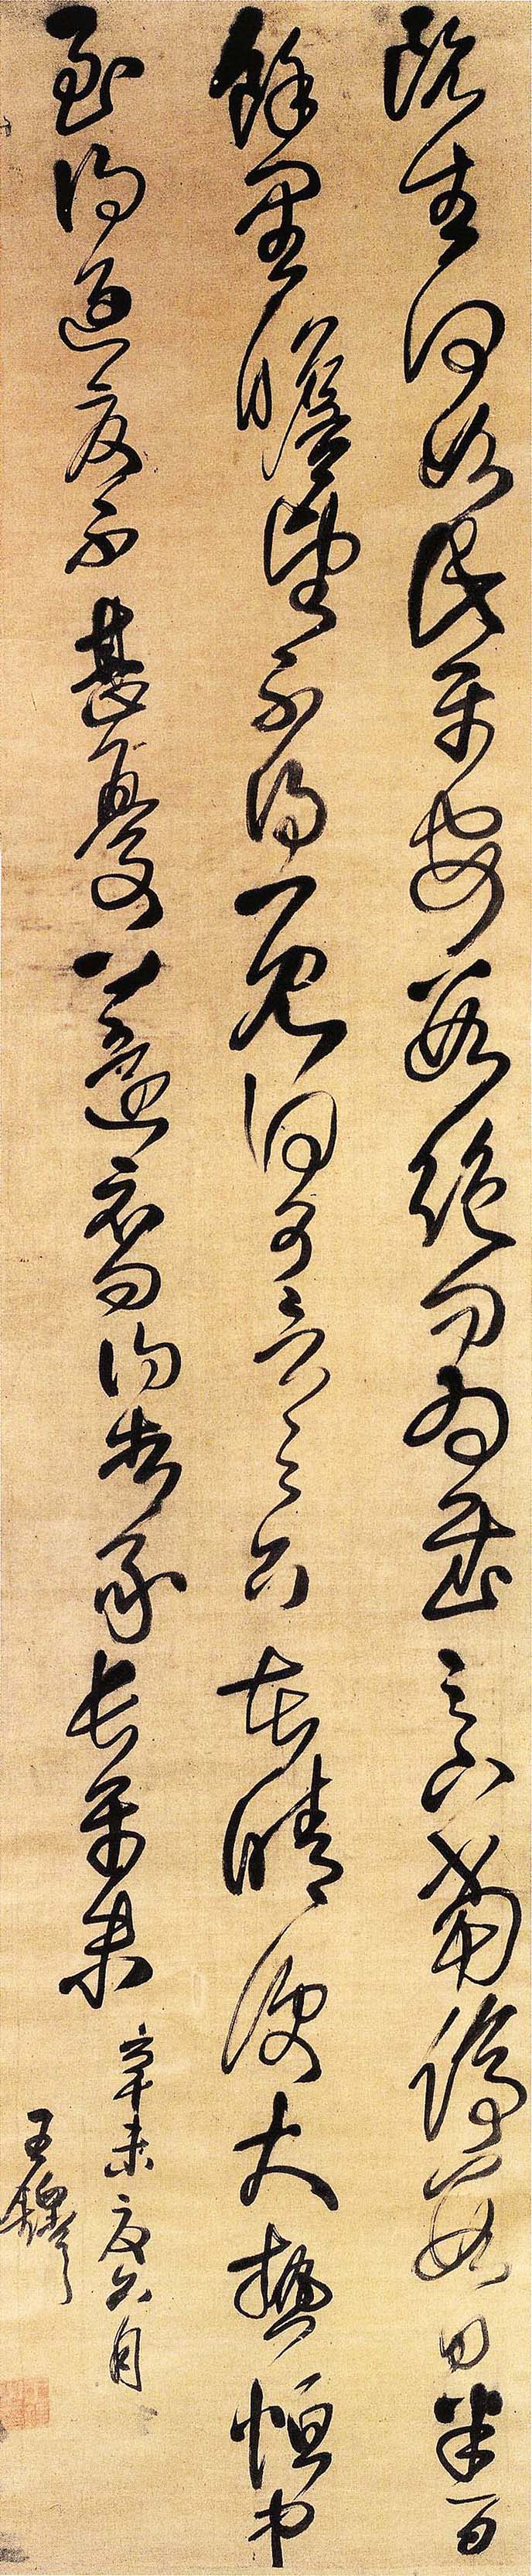 王铎草书《临阁帖轴》-南京博物院藏(图1)